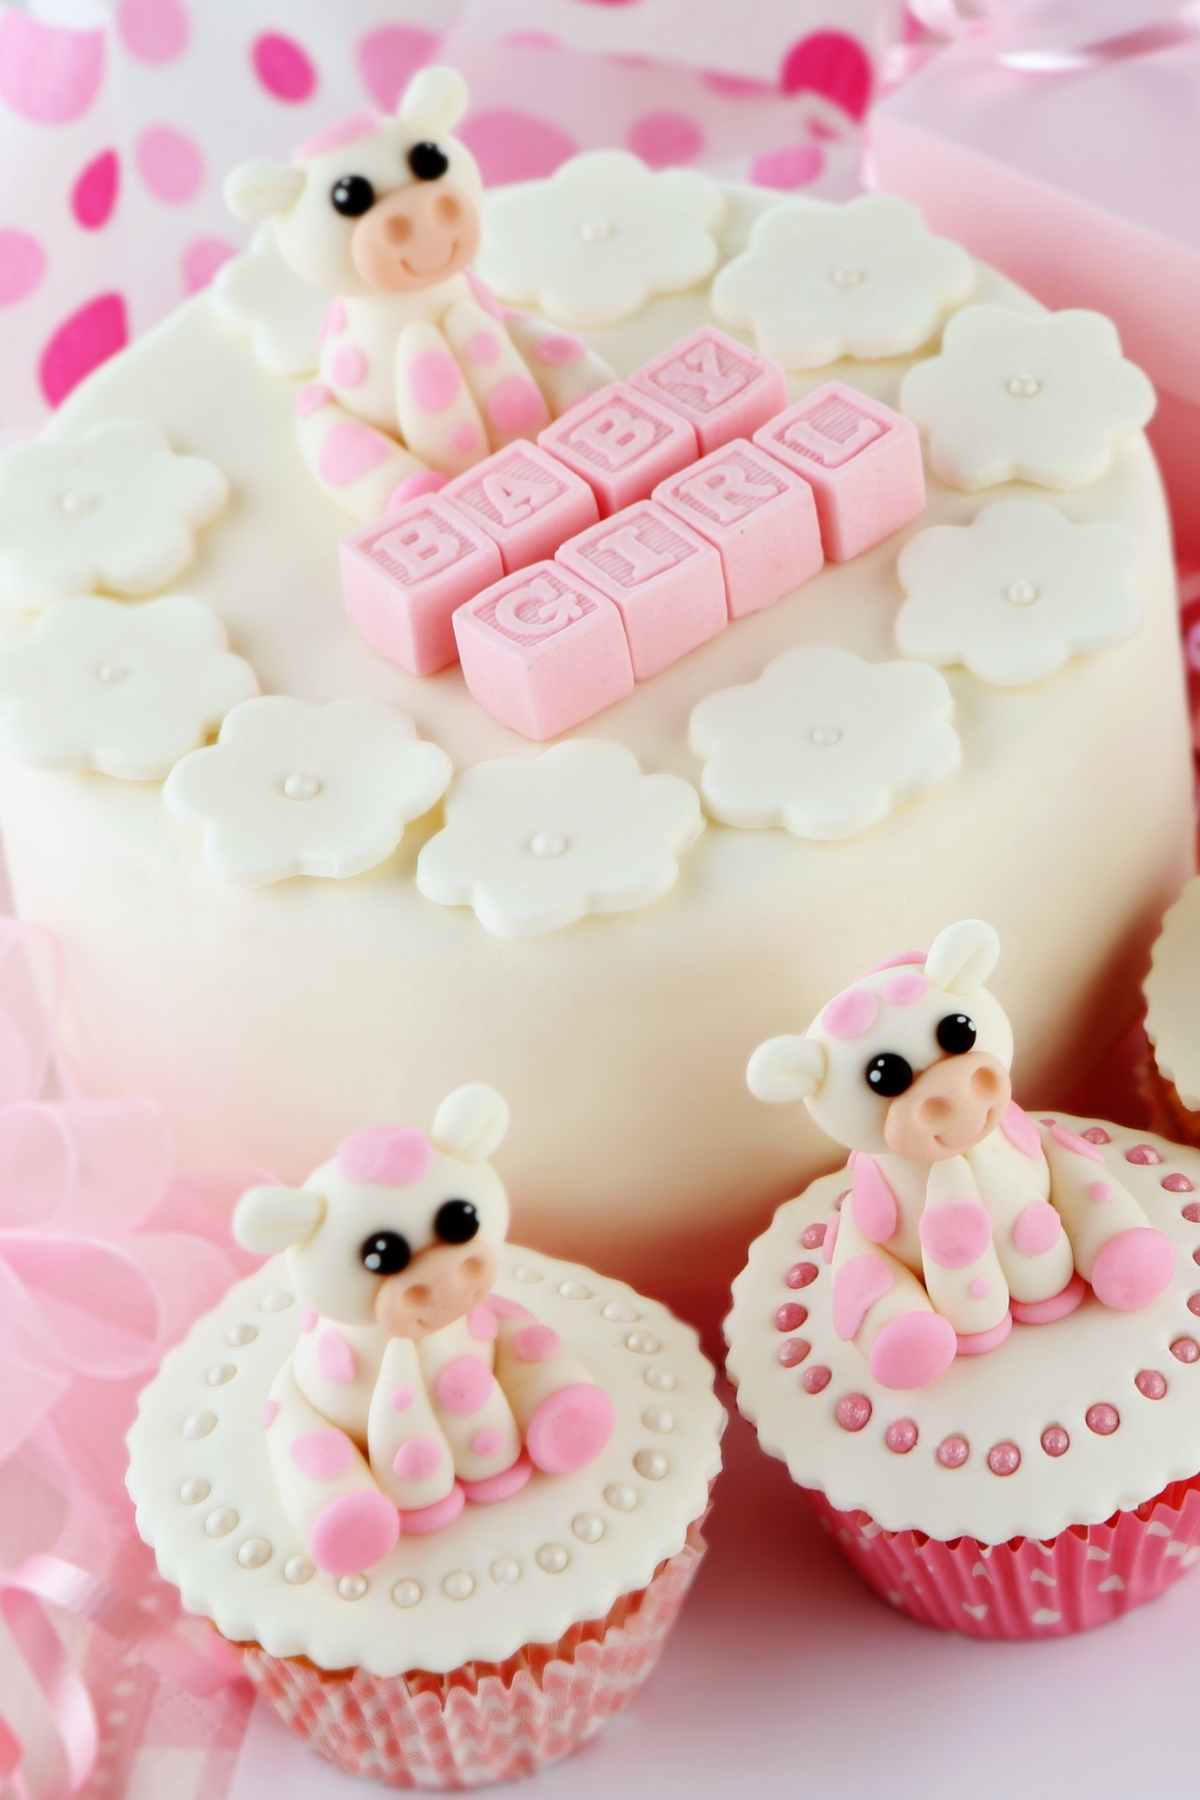 brugervejledning nederlag tilskadekomne Best Baby Shower Cake Ideas (For Girls and Boys) - IzzyCooking